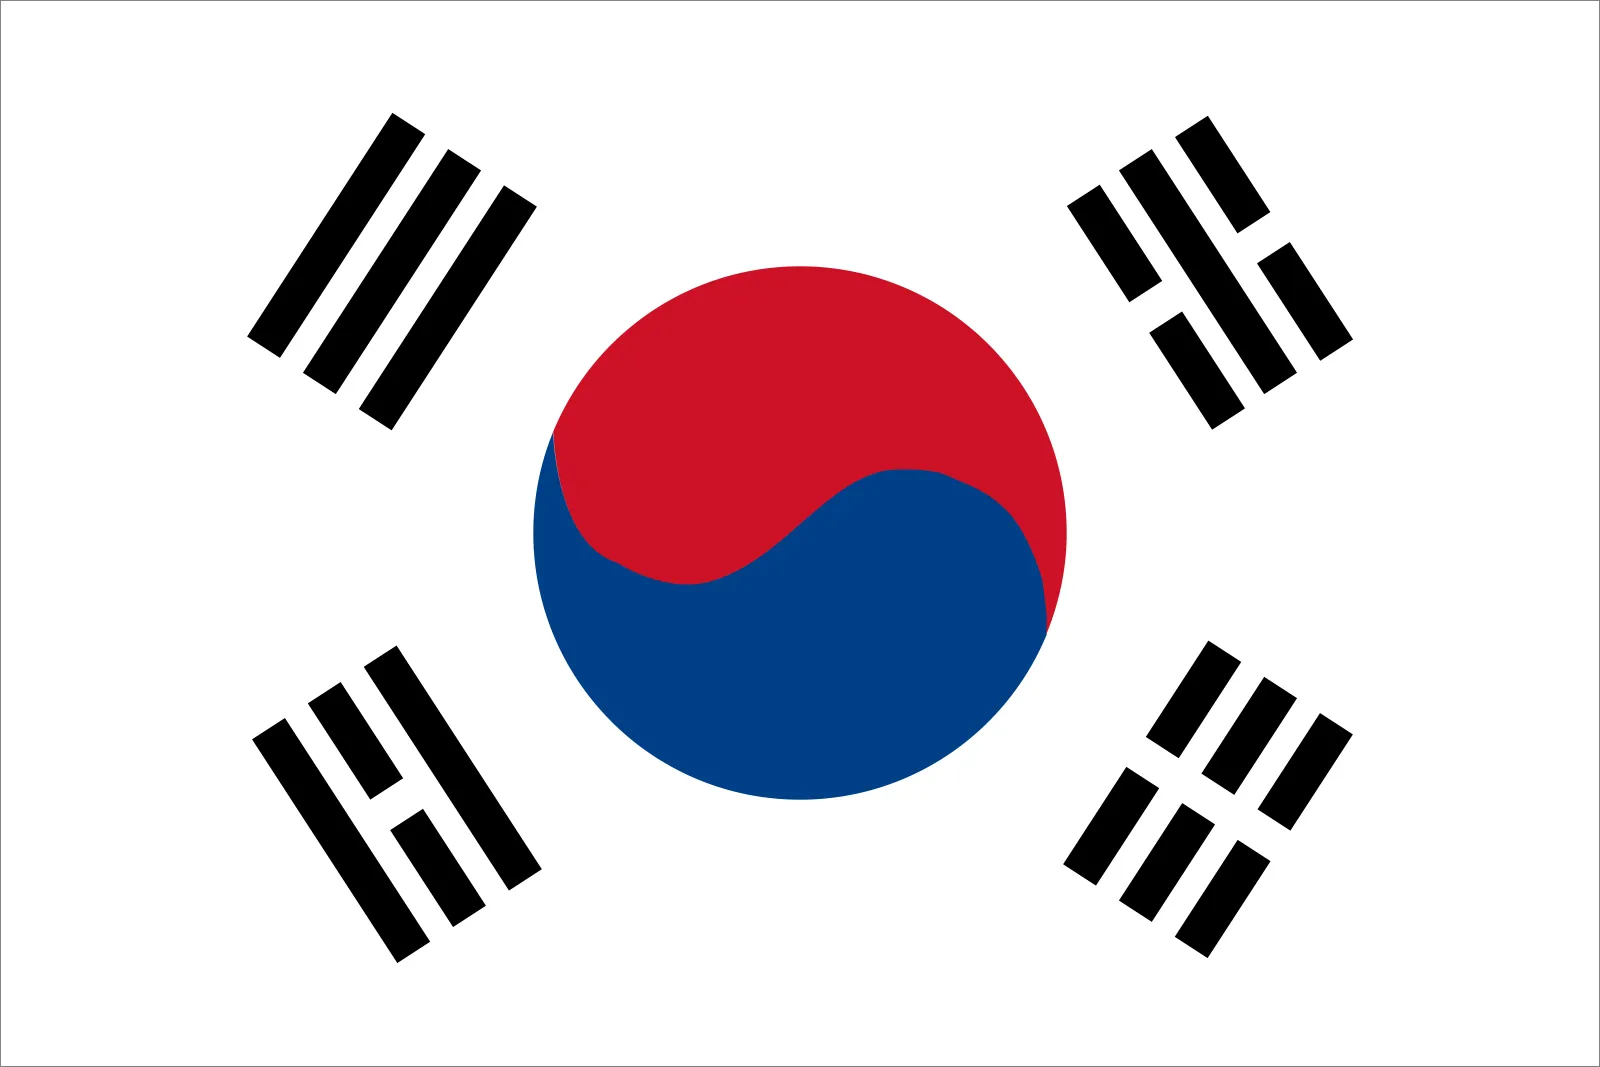 दक्षिण कोरियाको बेरोजगारी दर फेब्रुअरीमा १३.३ प्रतिशत घट्यो